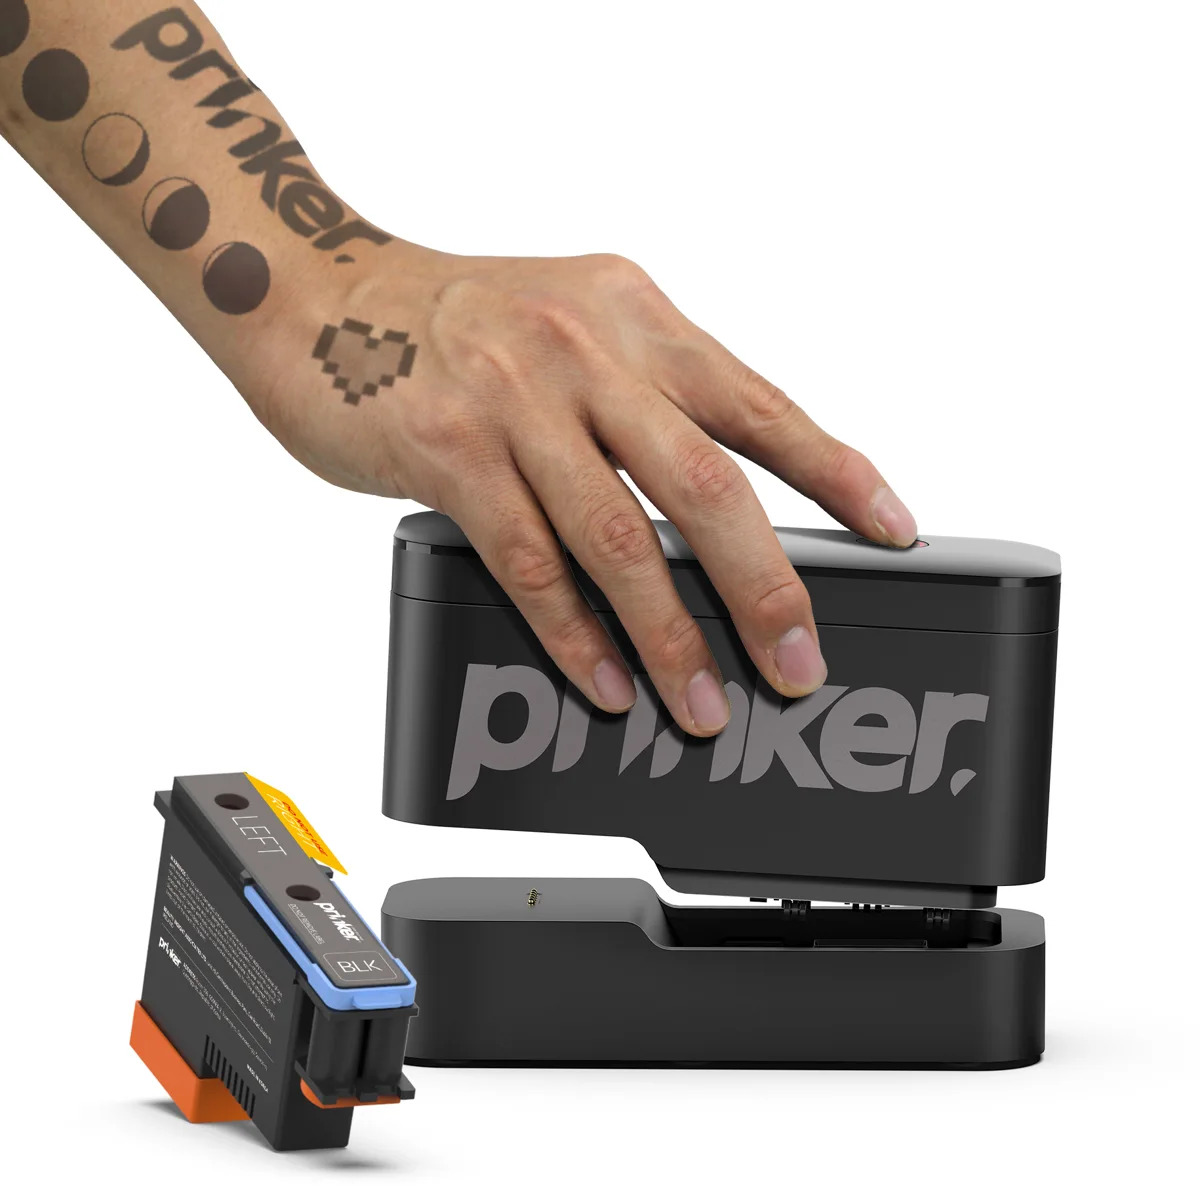 消せるカラータトゥープリンター「Prinker S」発売、化粧品由来のインク採用